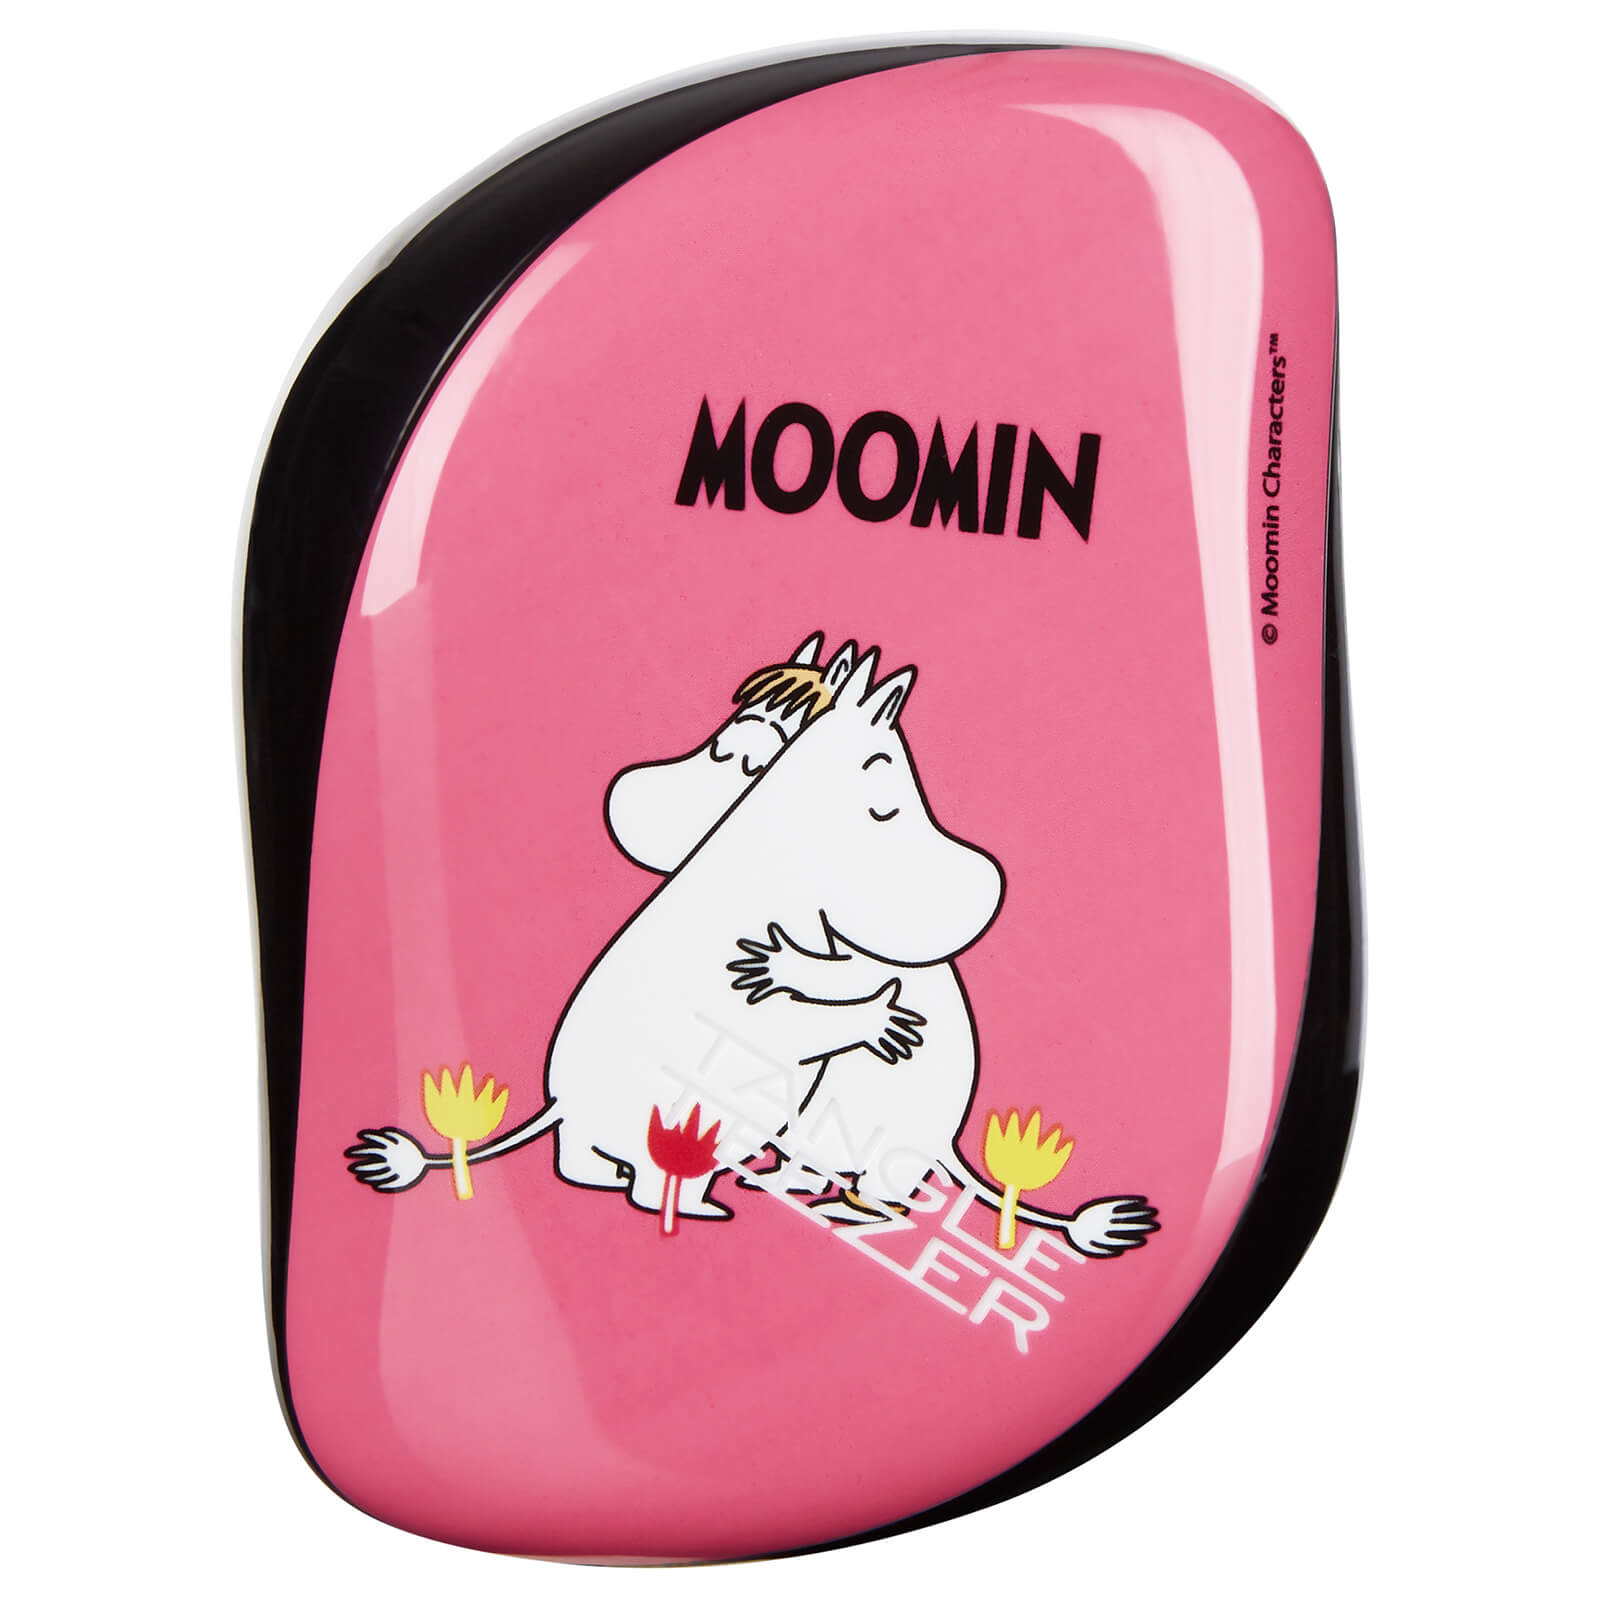 Cepillo para el pelo Compact Hair Styler de Tangle Teezer - Moomin Pink